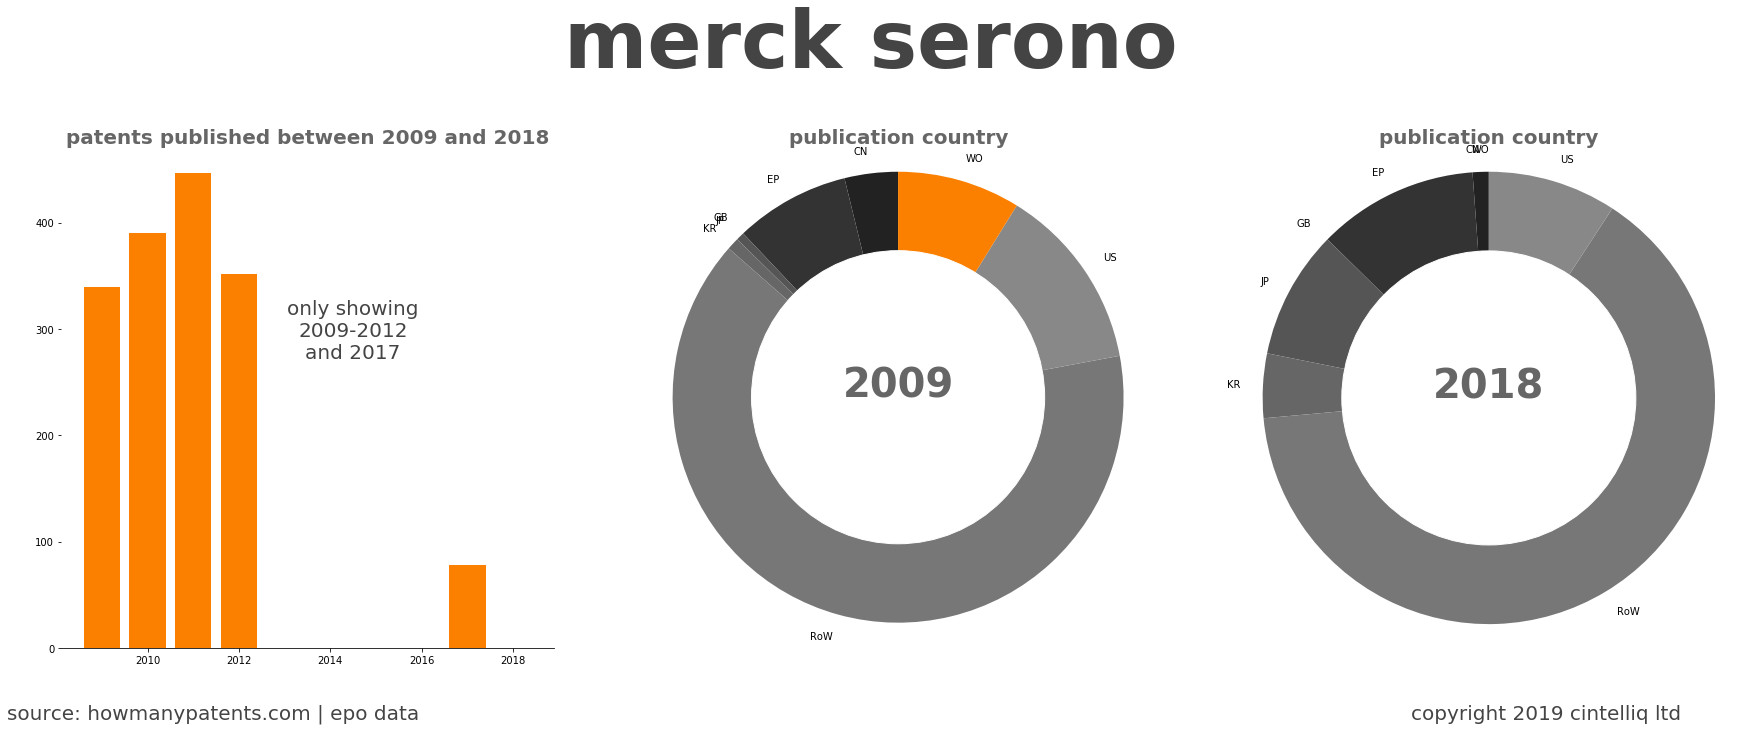 summary of patents for Merck Serono